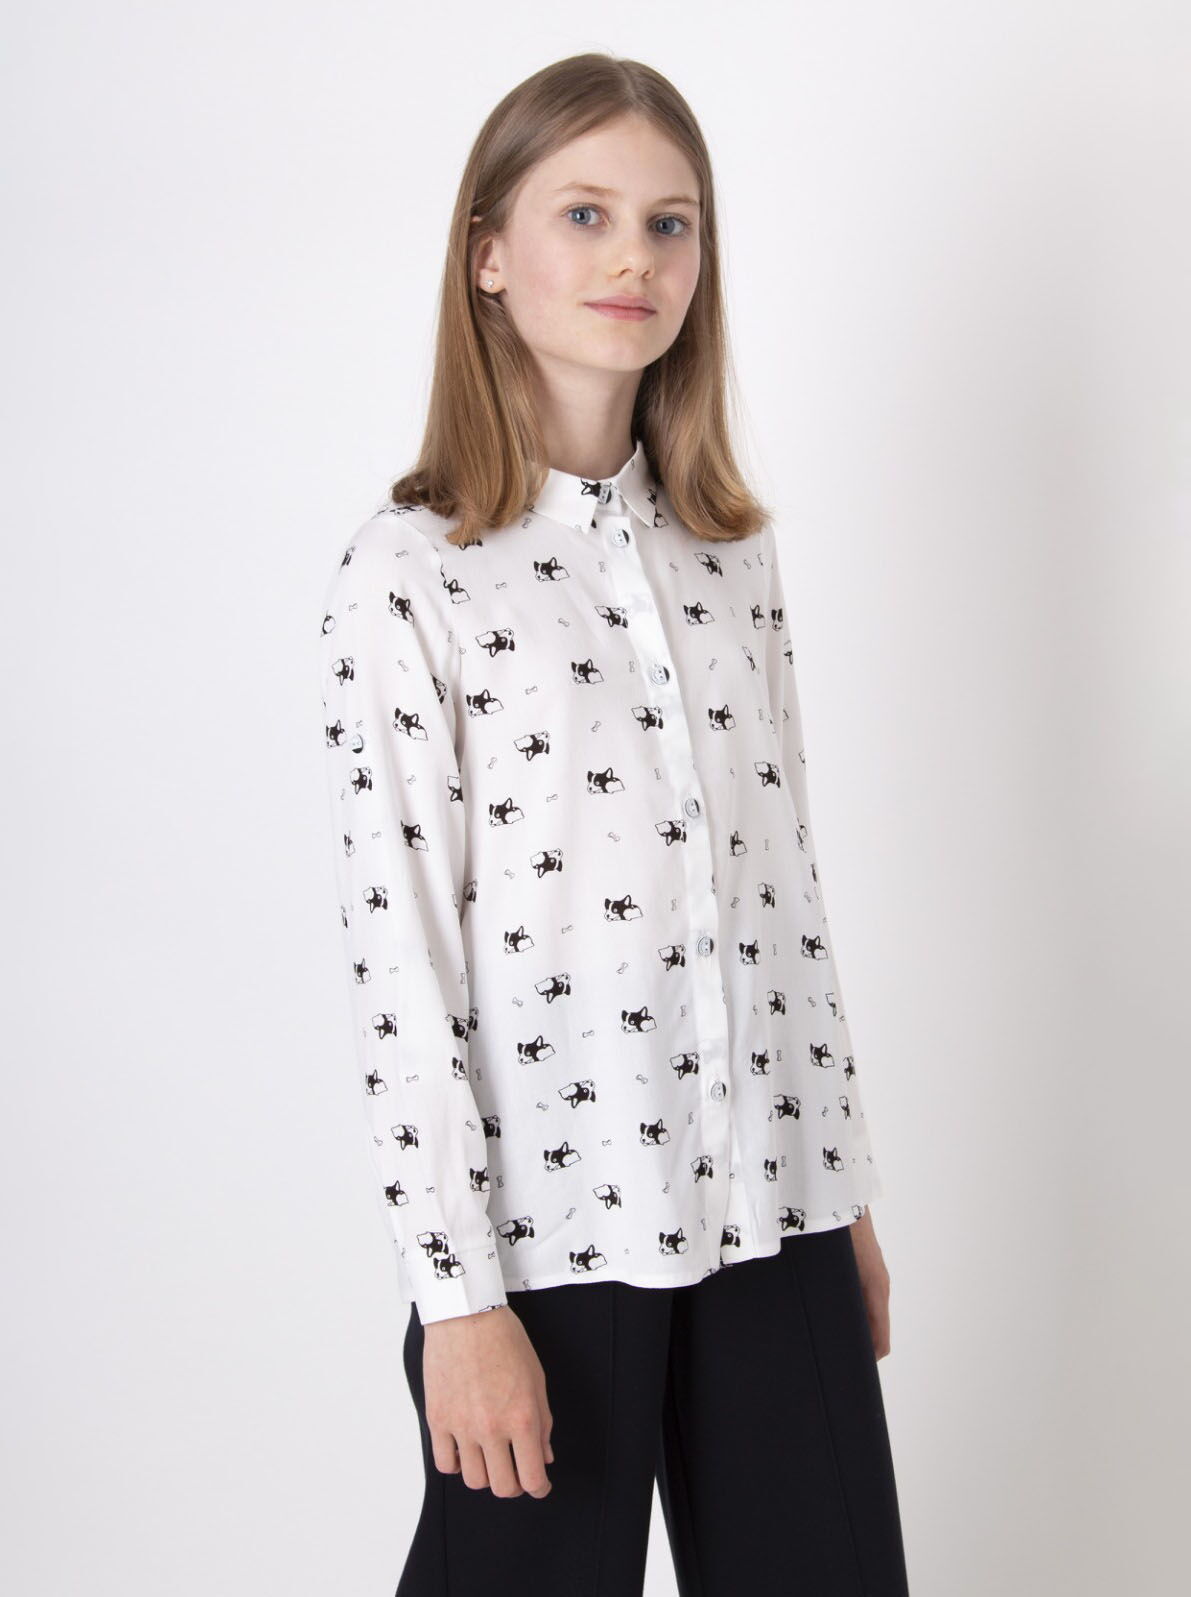 Блузка для девочки Mevis Собачки белая 4412-03 - цена